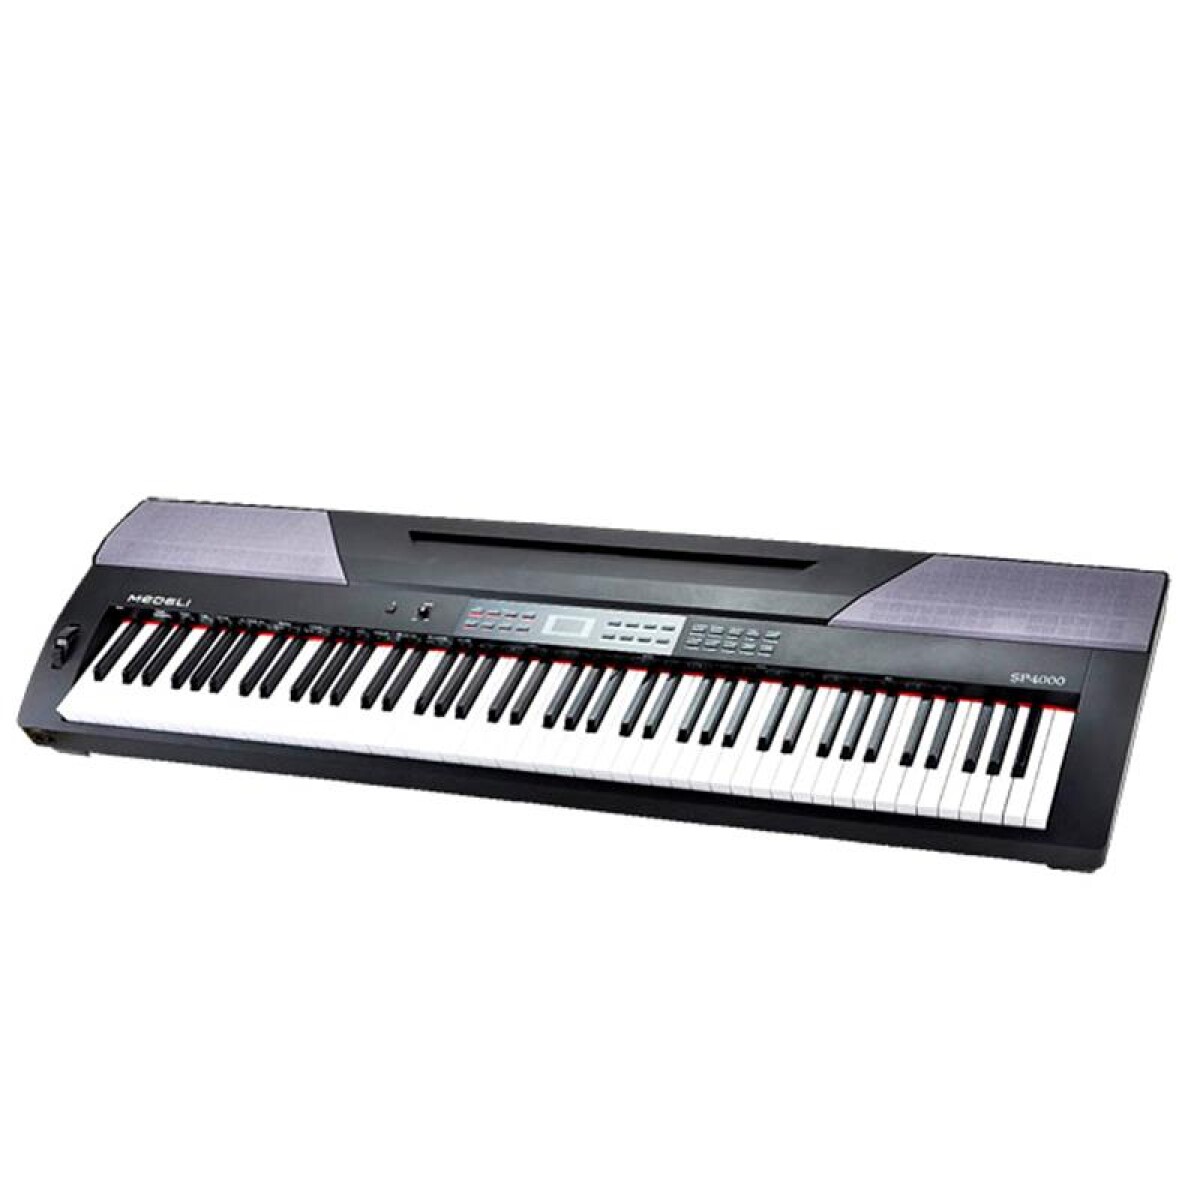 Piano Digital Medeli Sp4000 